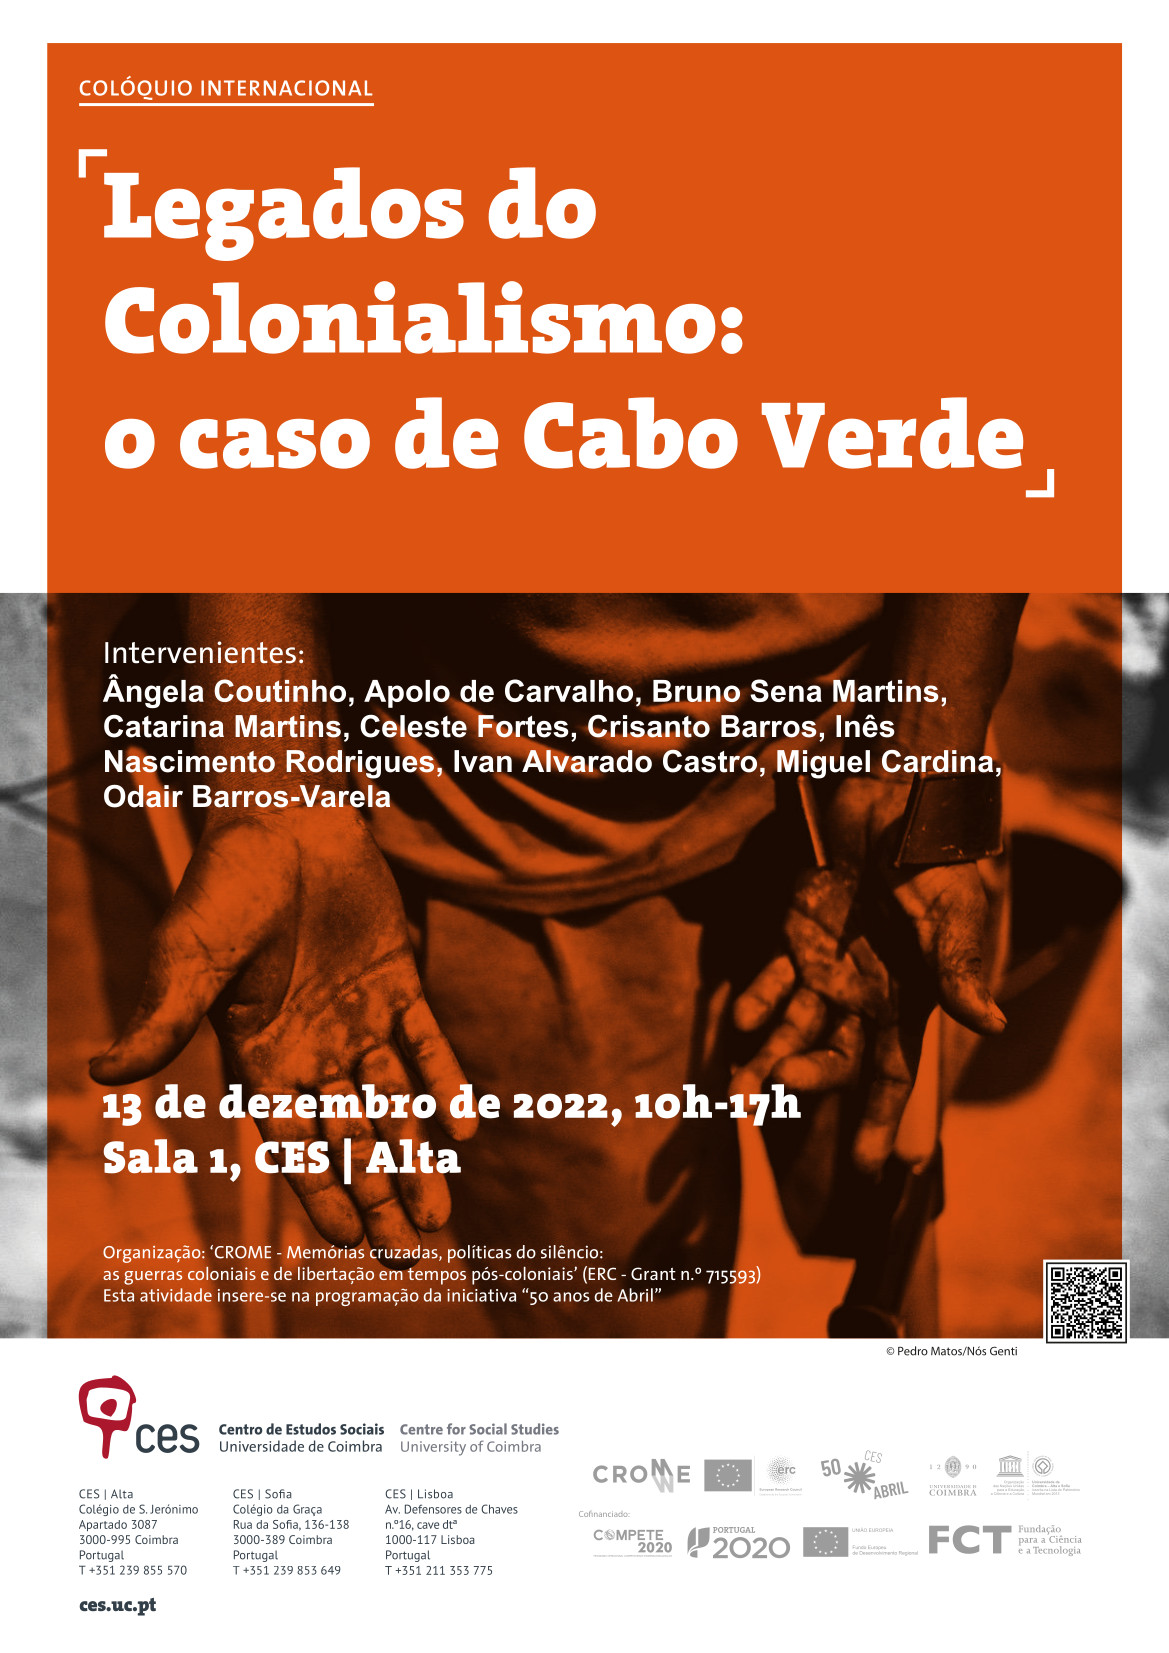 Legados do Colonialismo: o caso de Cabo Verde<span id="edit_41168"><script>$(function() { $('#edit_41168').load( "/myces/user/editobj.php?tipo=evento&id=41168" ); });</script></span>